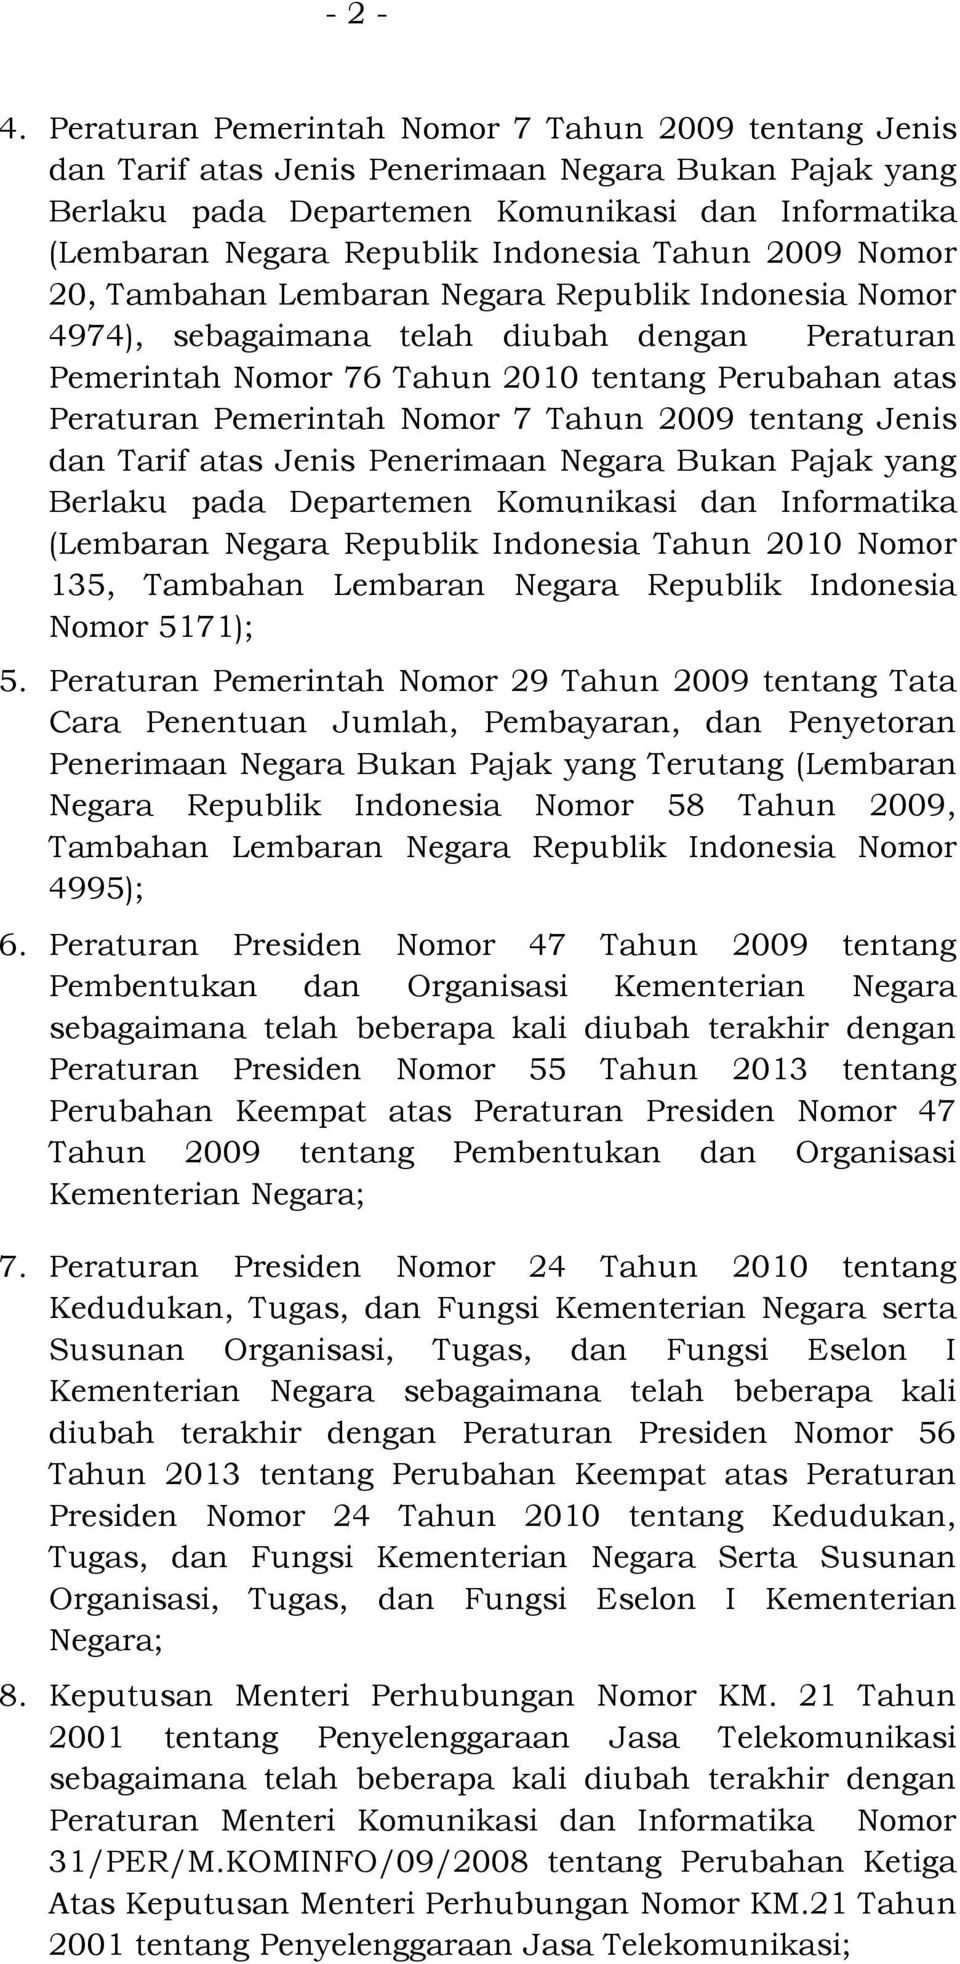 Nomor 20, Tambahan Lembaran Negara Republik Indonesia Nomor 4974), sebagaimana telah diubah dengan Peraturan Pemerintah Nomor 76 2010 tentang Perubahan atas Peraturan Pemerintah Nomor 7 2009 tentang